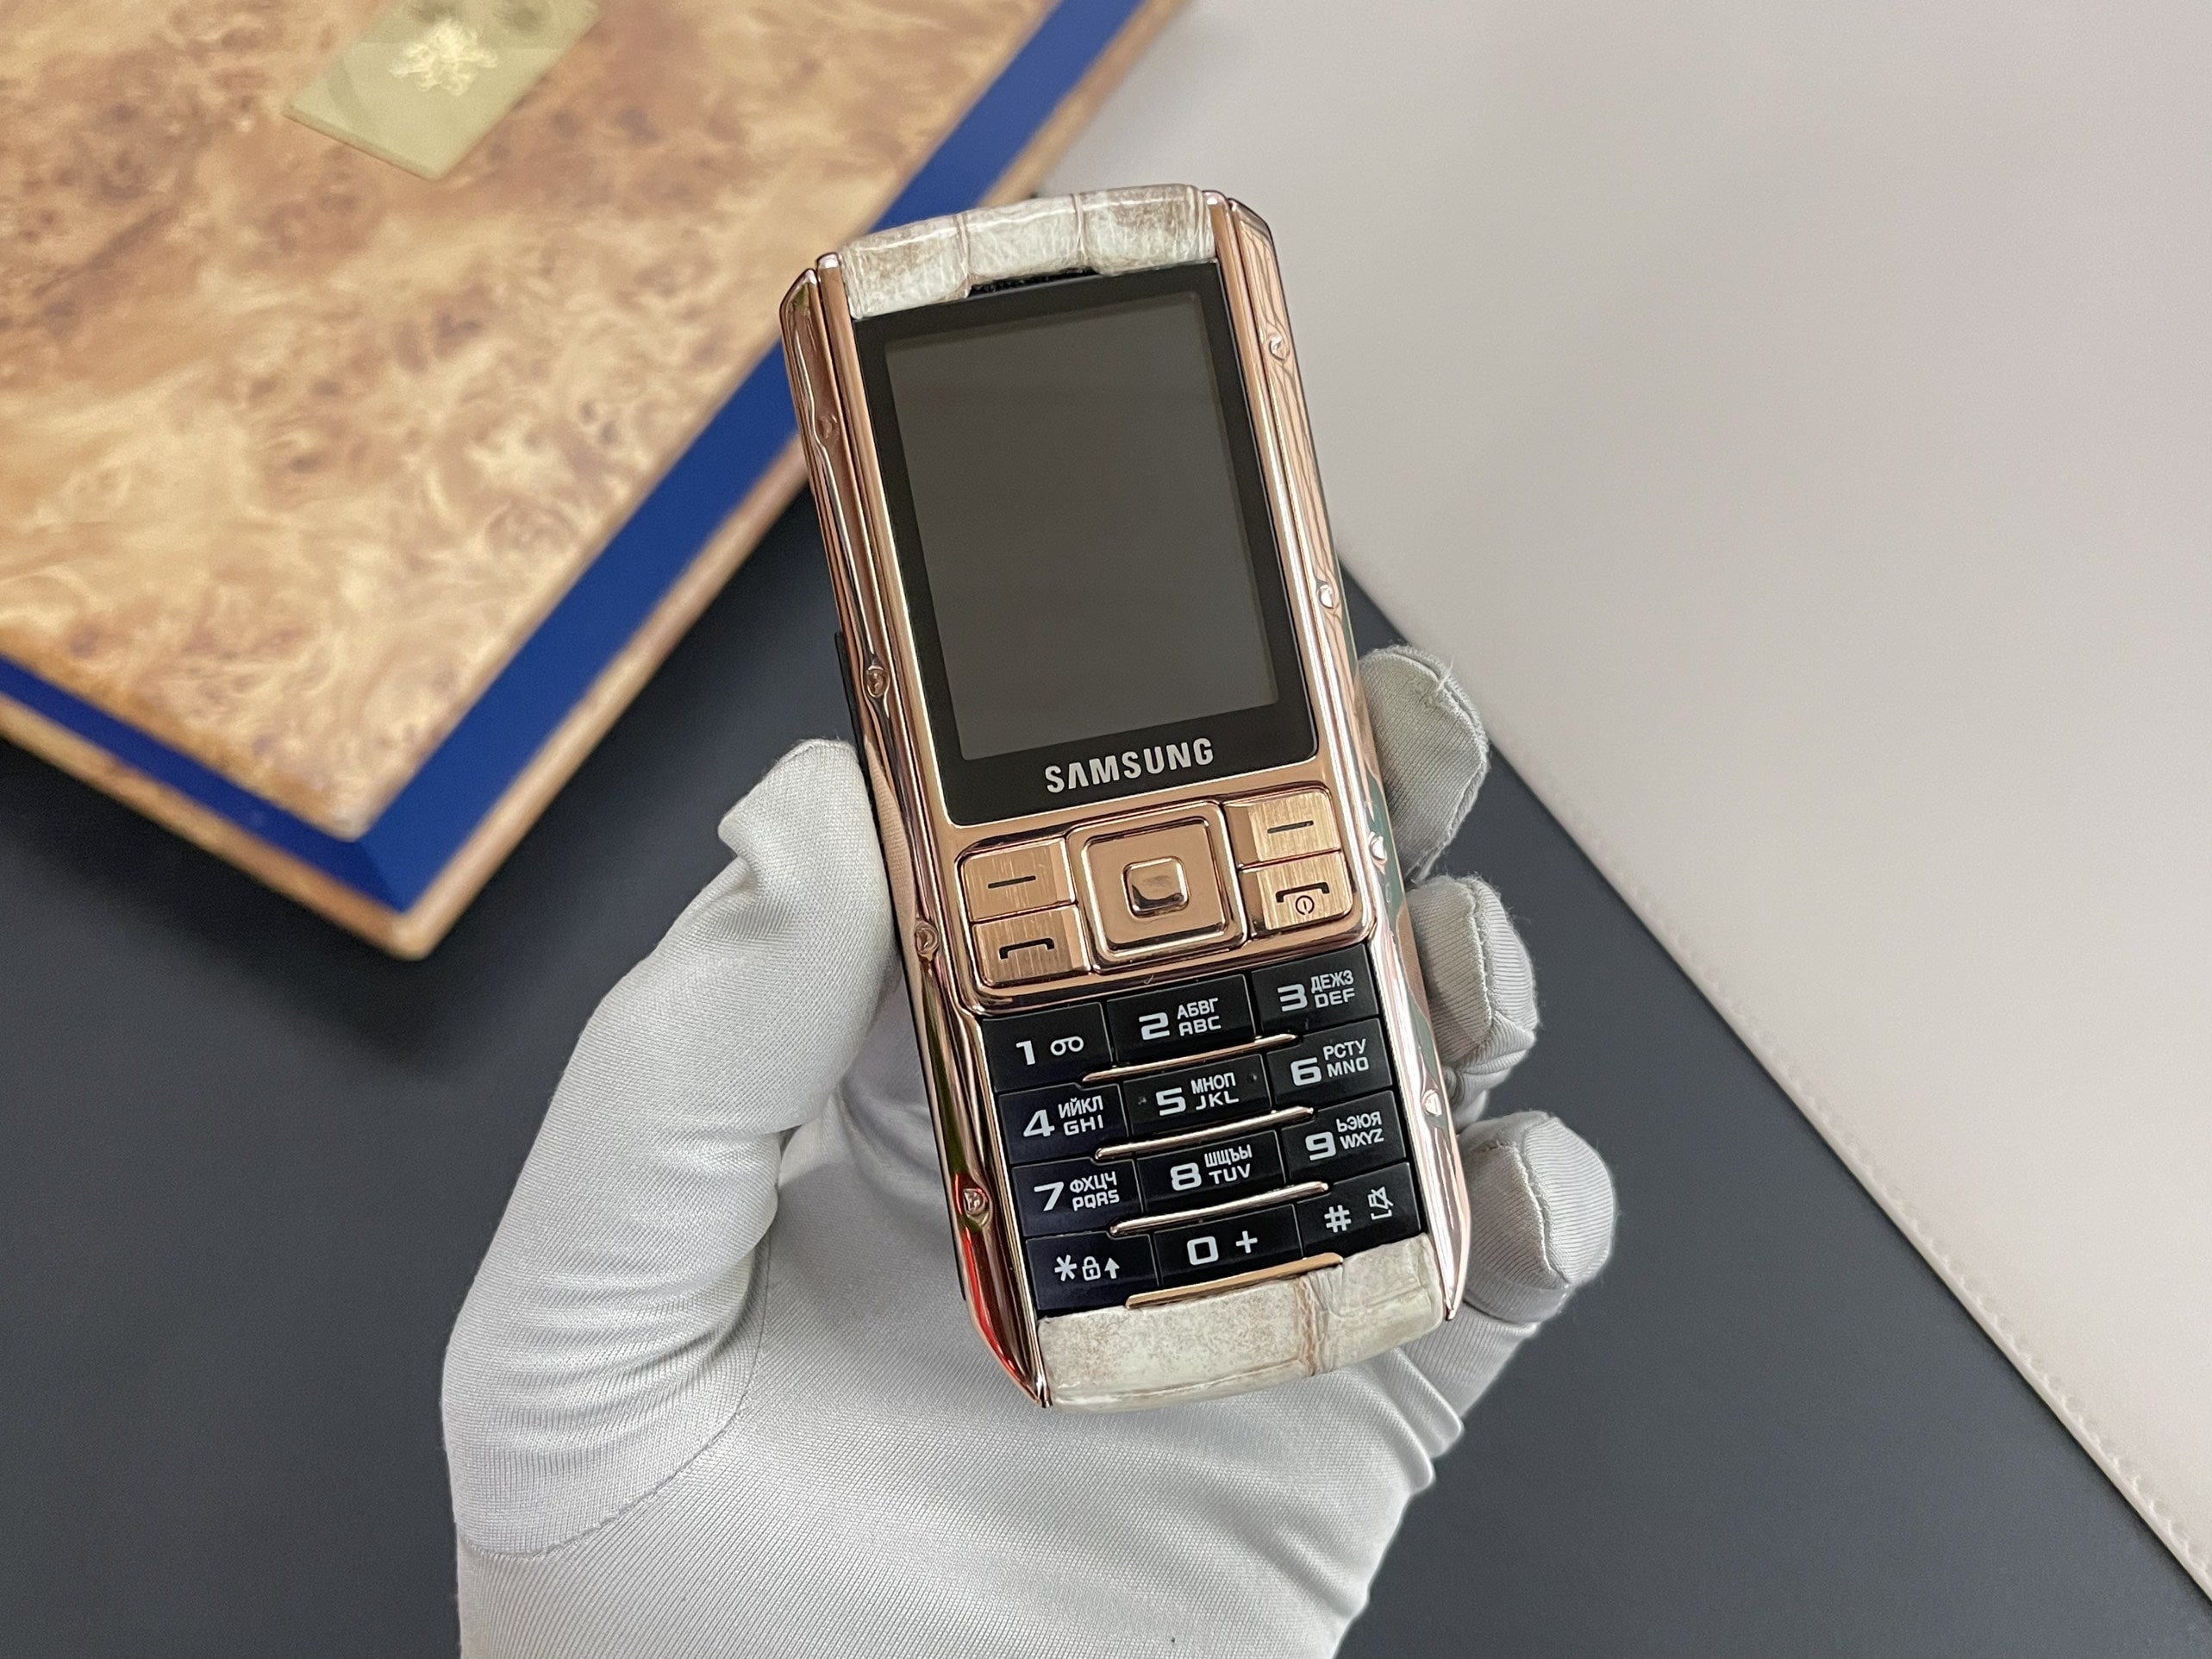 Samsung Ego điện thoại chống nghe lén Trên tay Samsung Ego S9402 mạ vàng hồng 